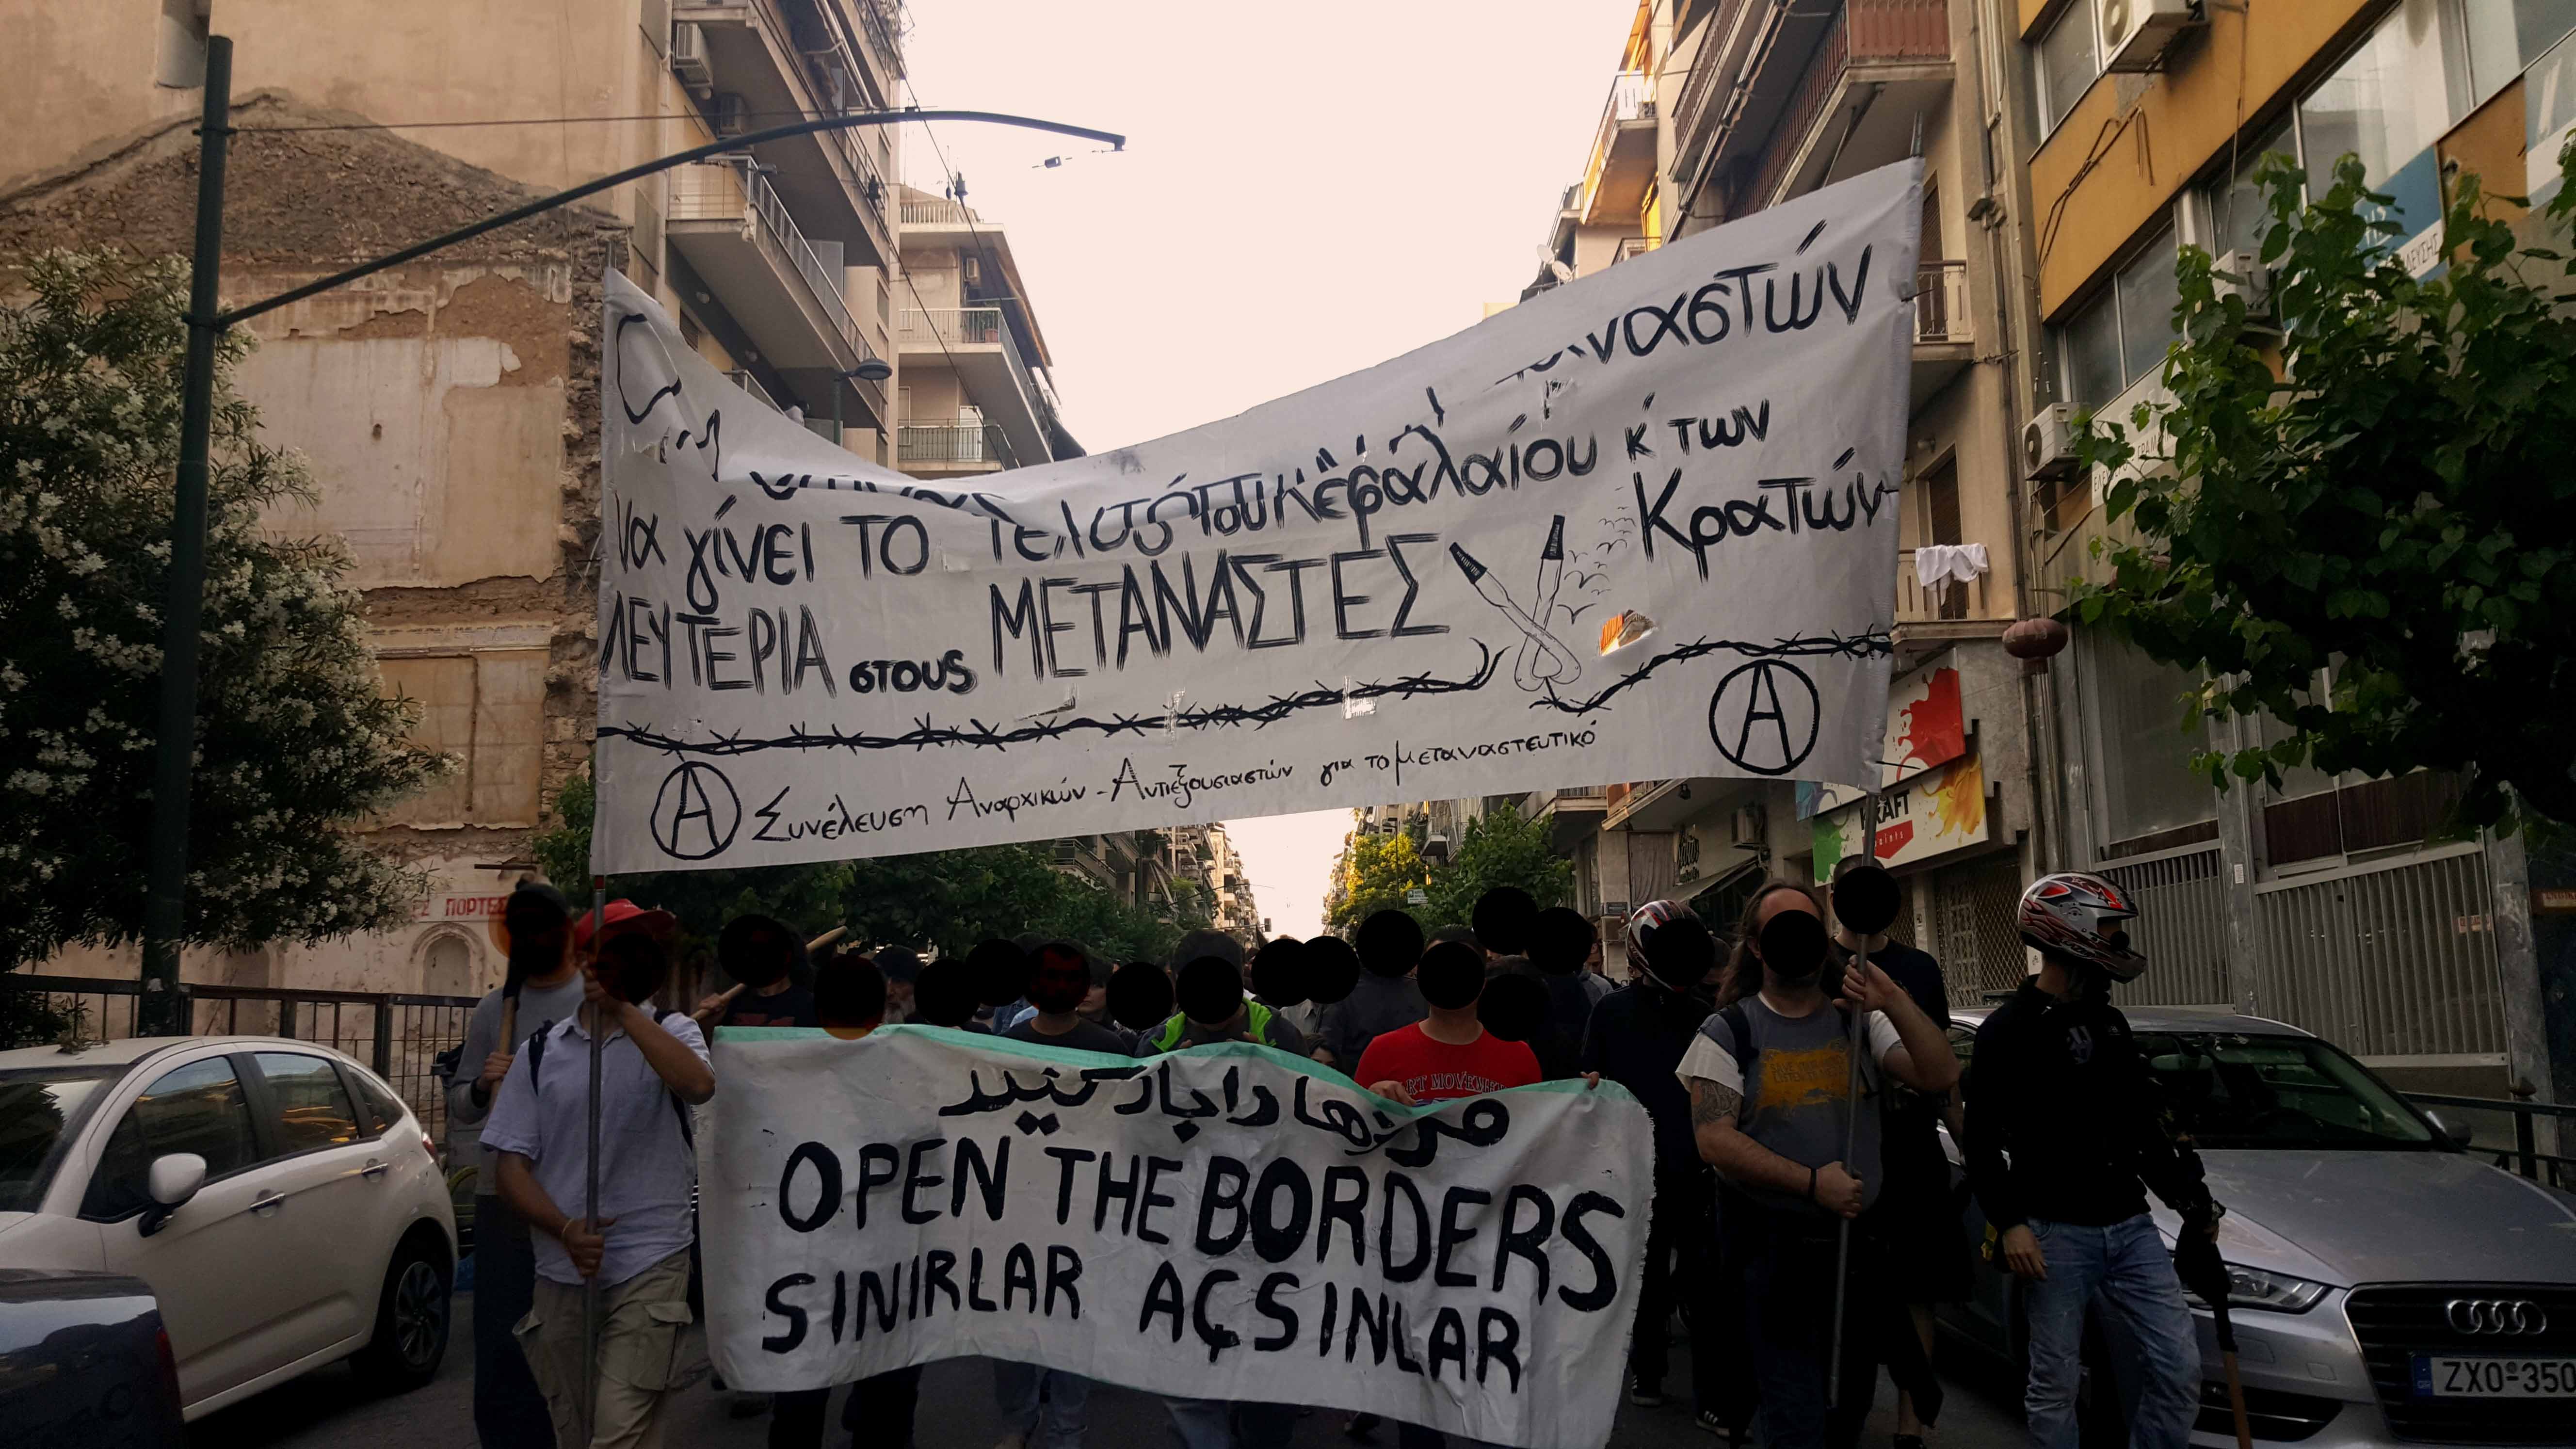 Αθήνα: Σχετικά με την πορεία από την πλατεία Βικτωρίας στις 24/05